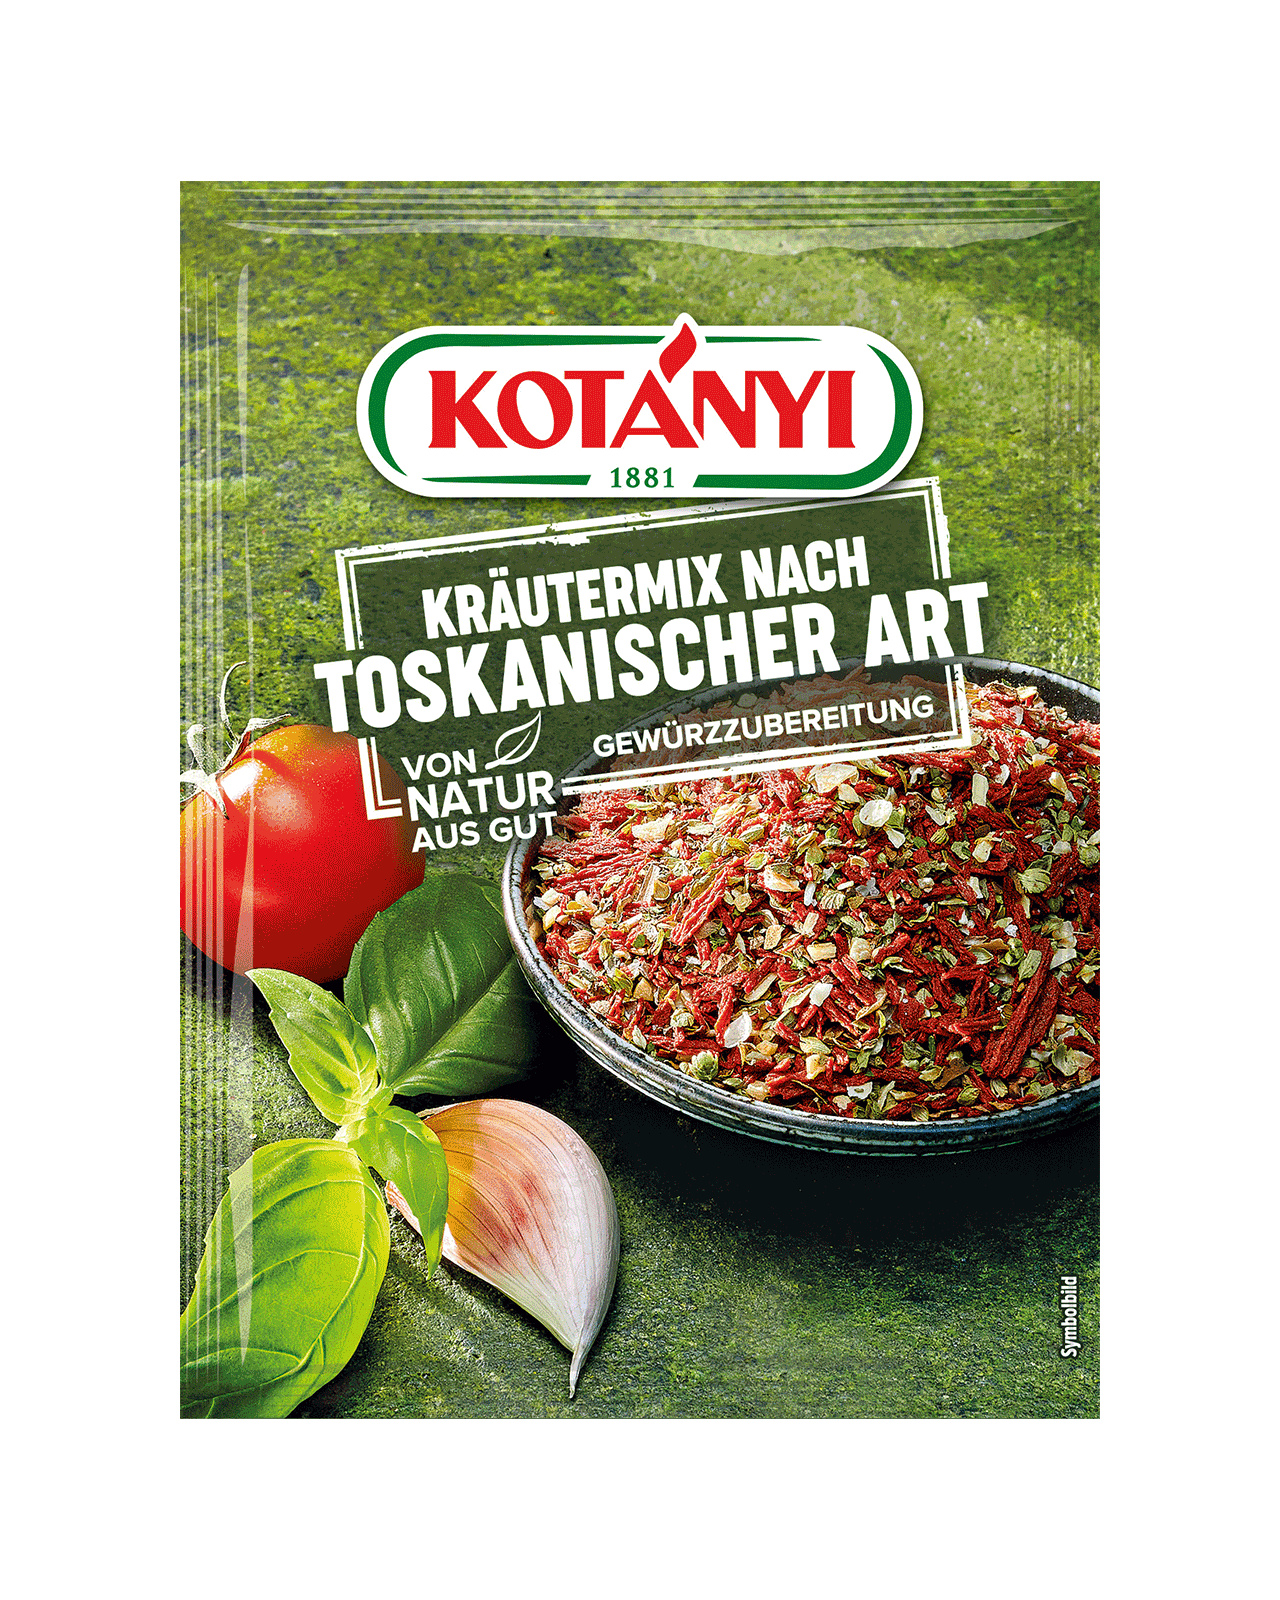 9001414212004 120001 Kotányi Kräutermix Nach Toskanischer Art Gewürzzubereitung At Pouch Vs